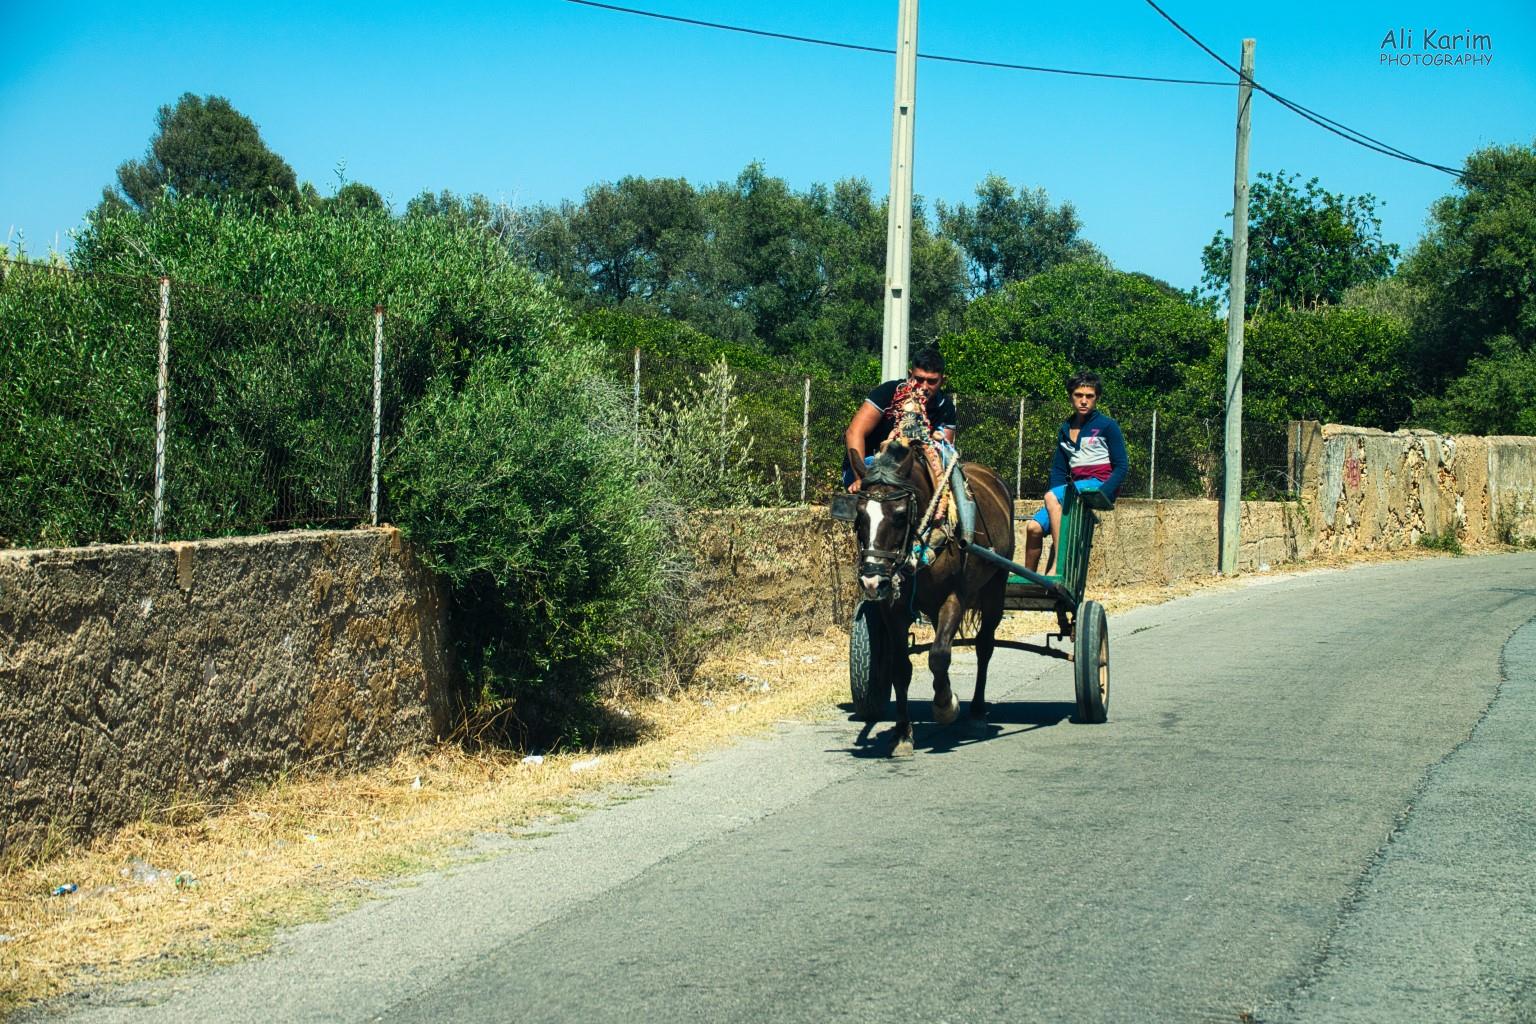 Algarve, Portugal Rural scene on the backroads